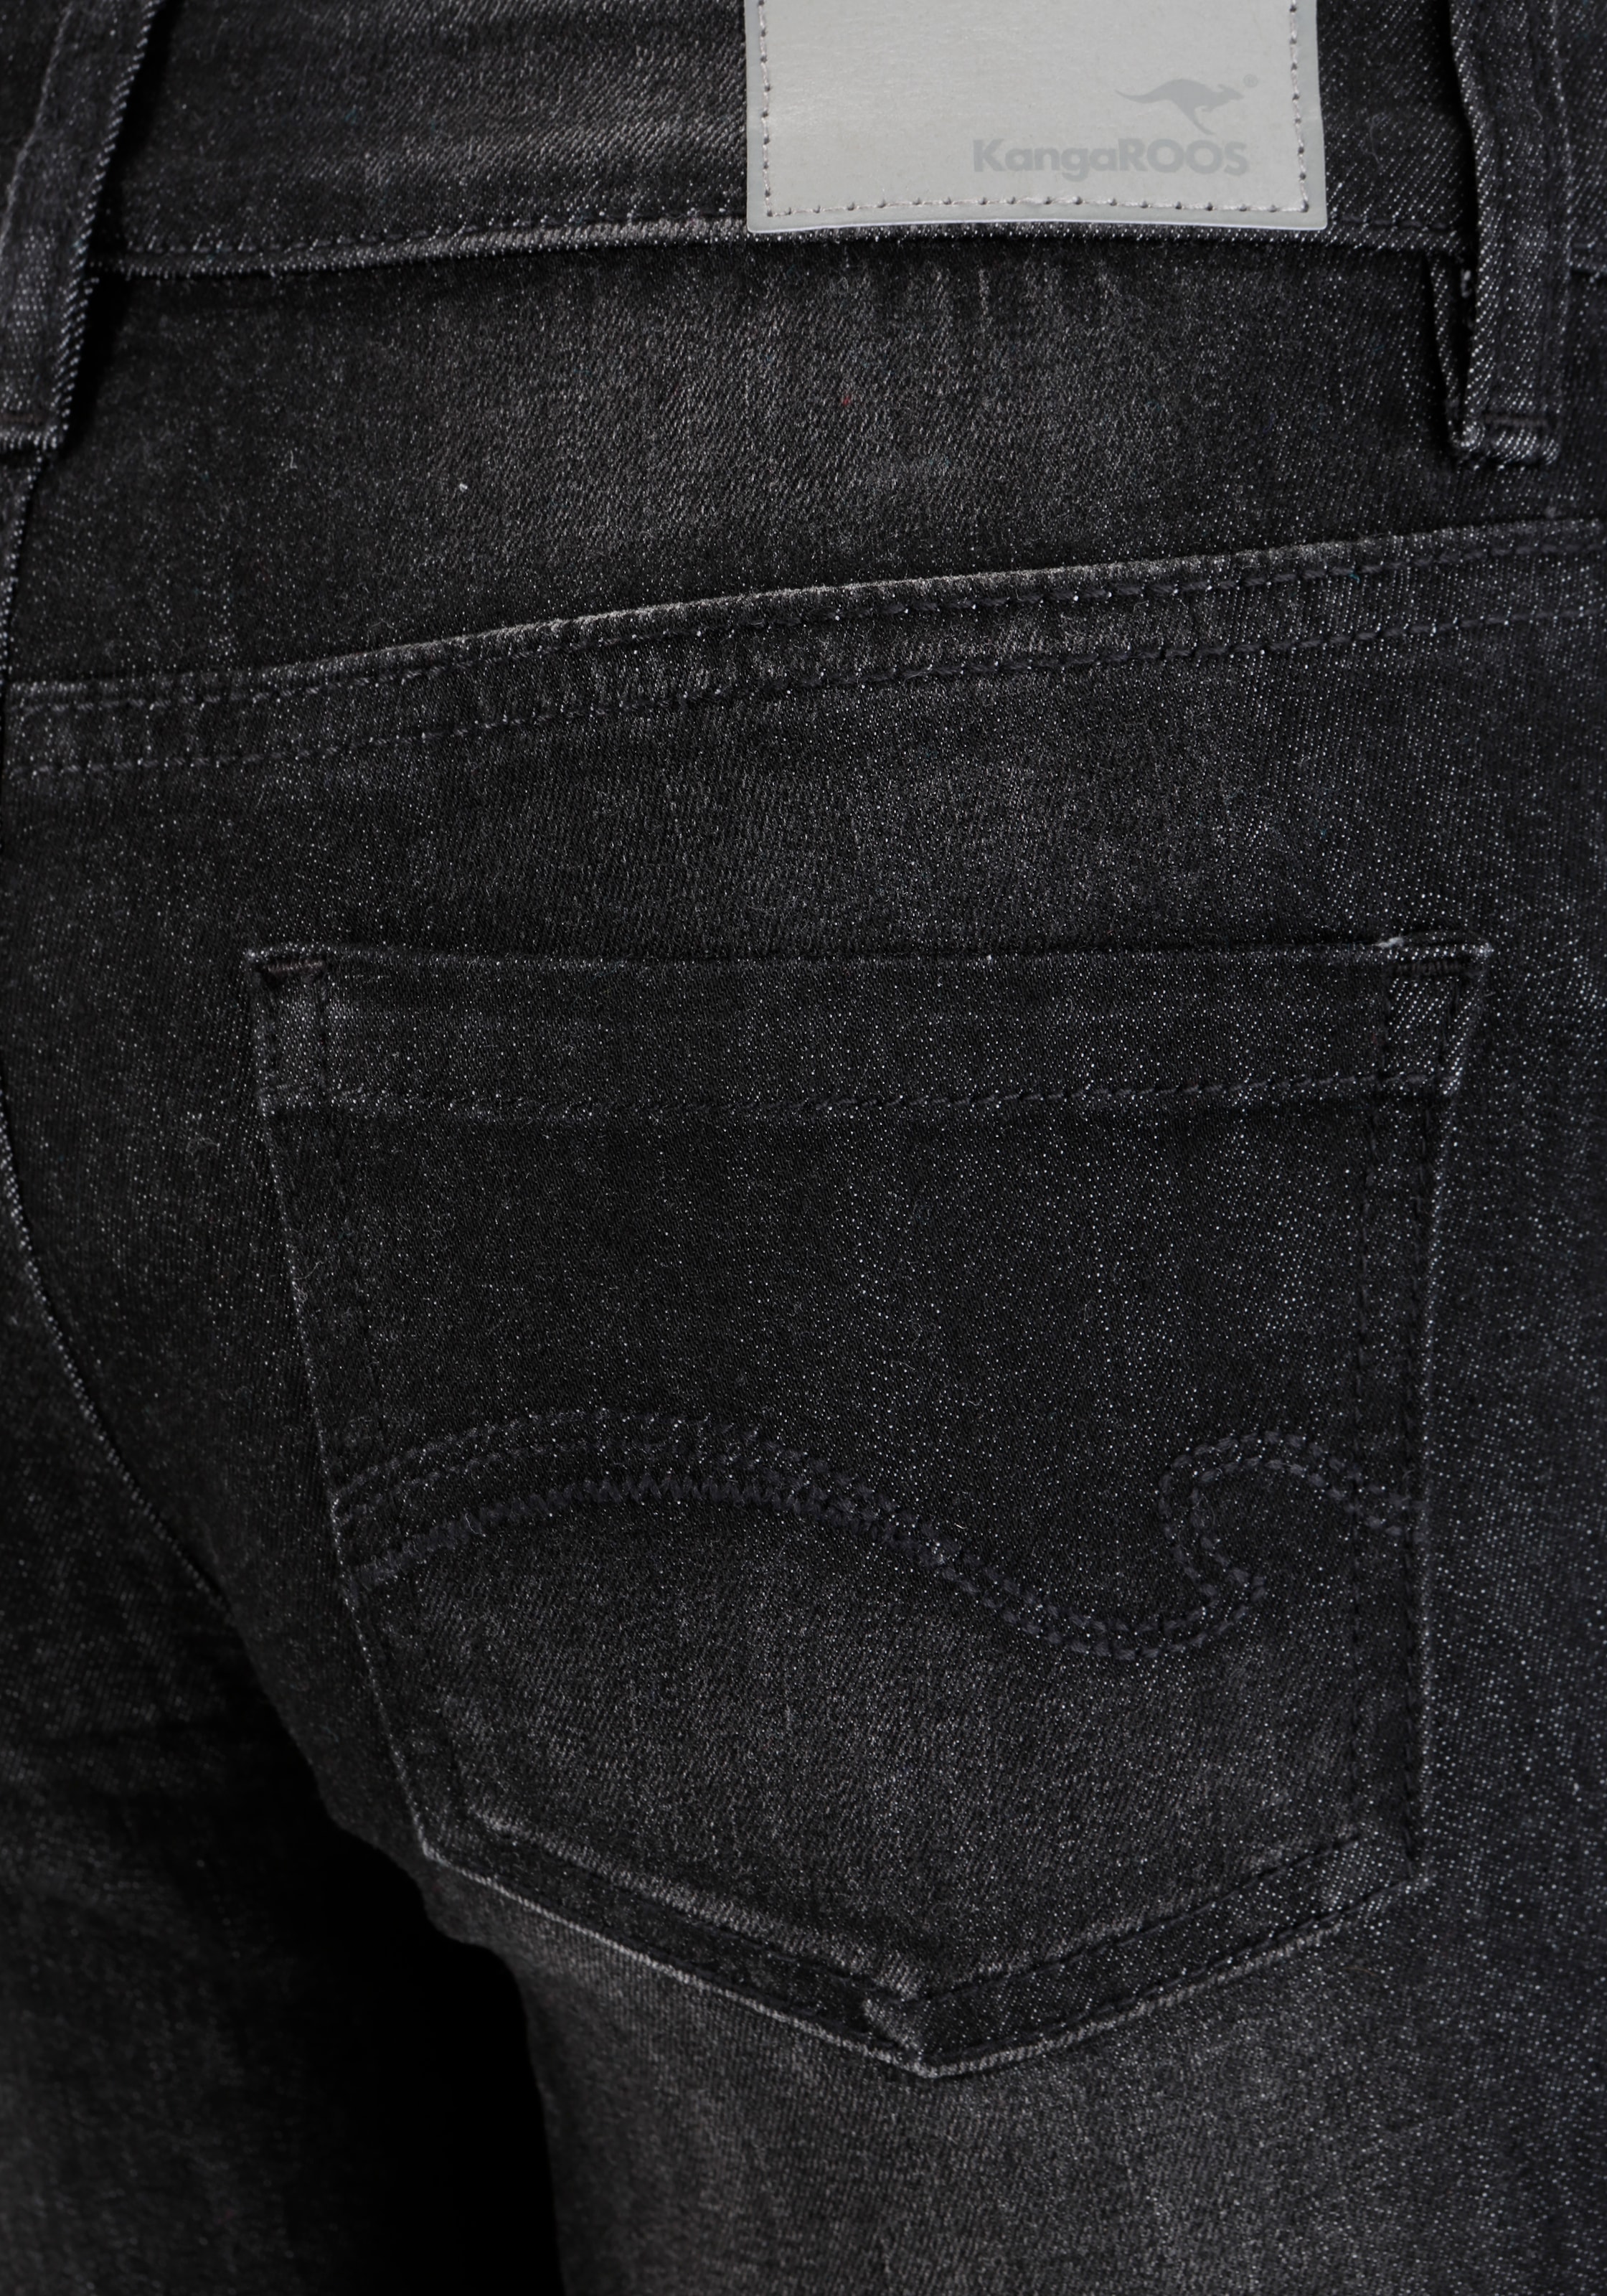 KangaROOS 5-Pocket-Jeans »THE BOOTCUT«